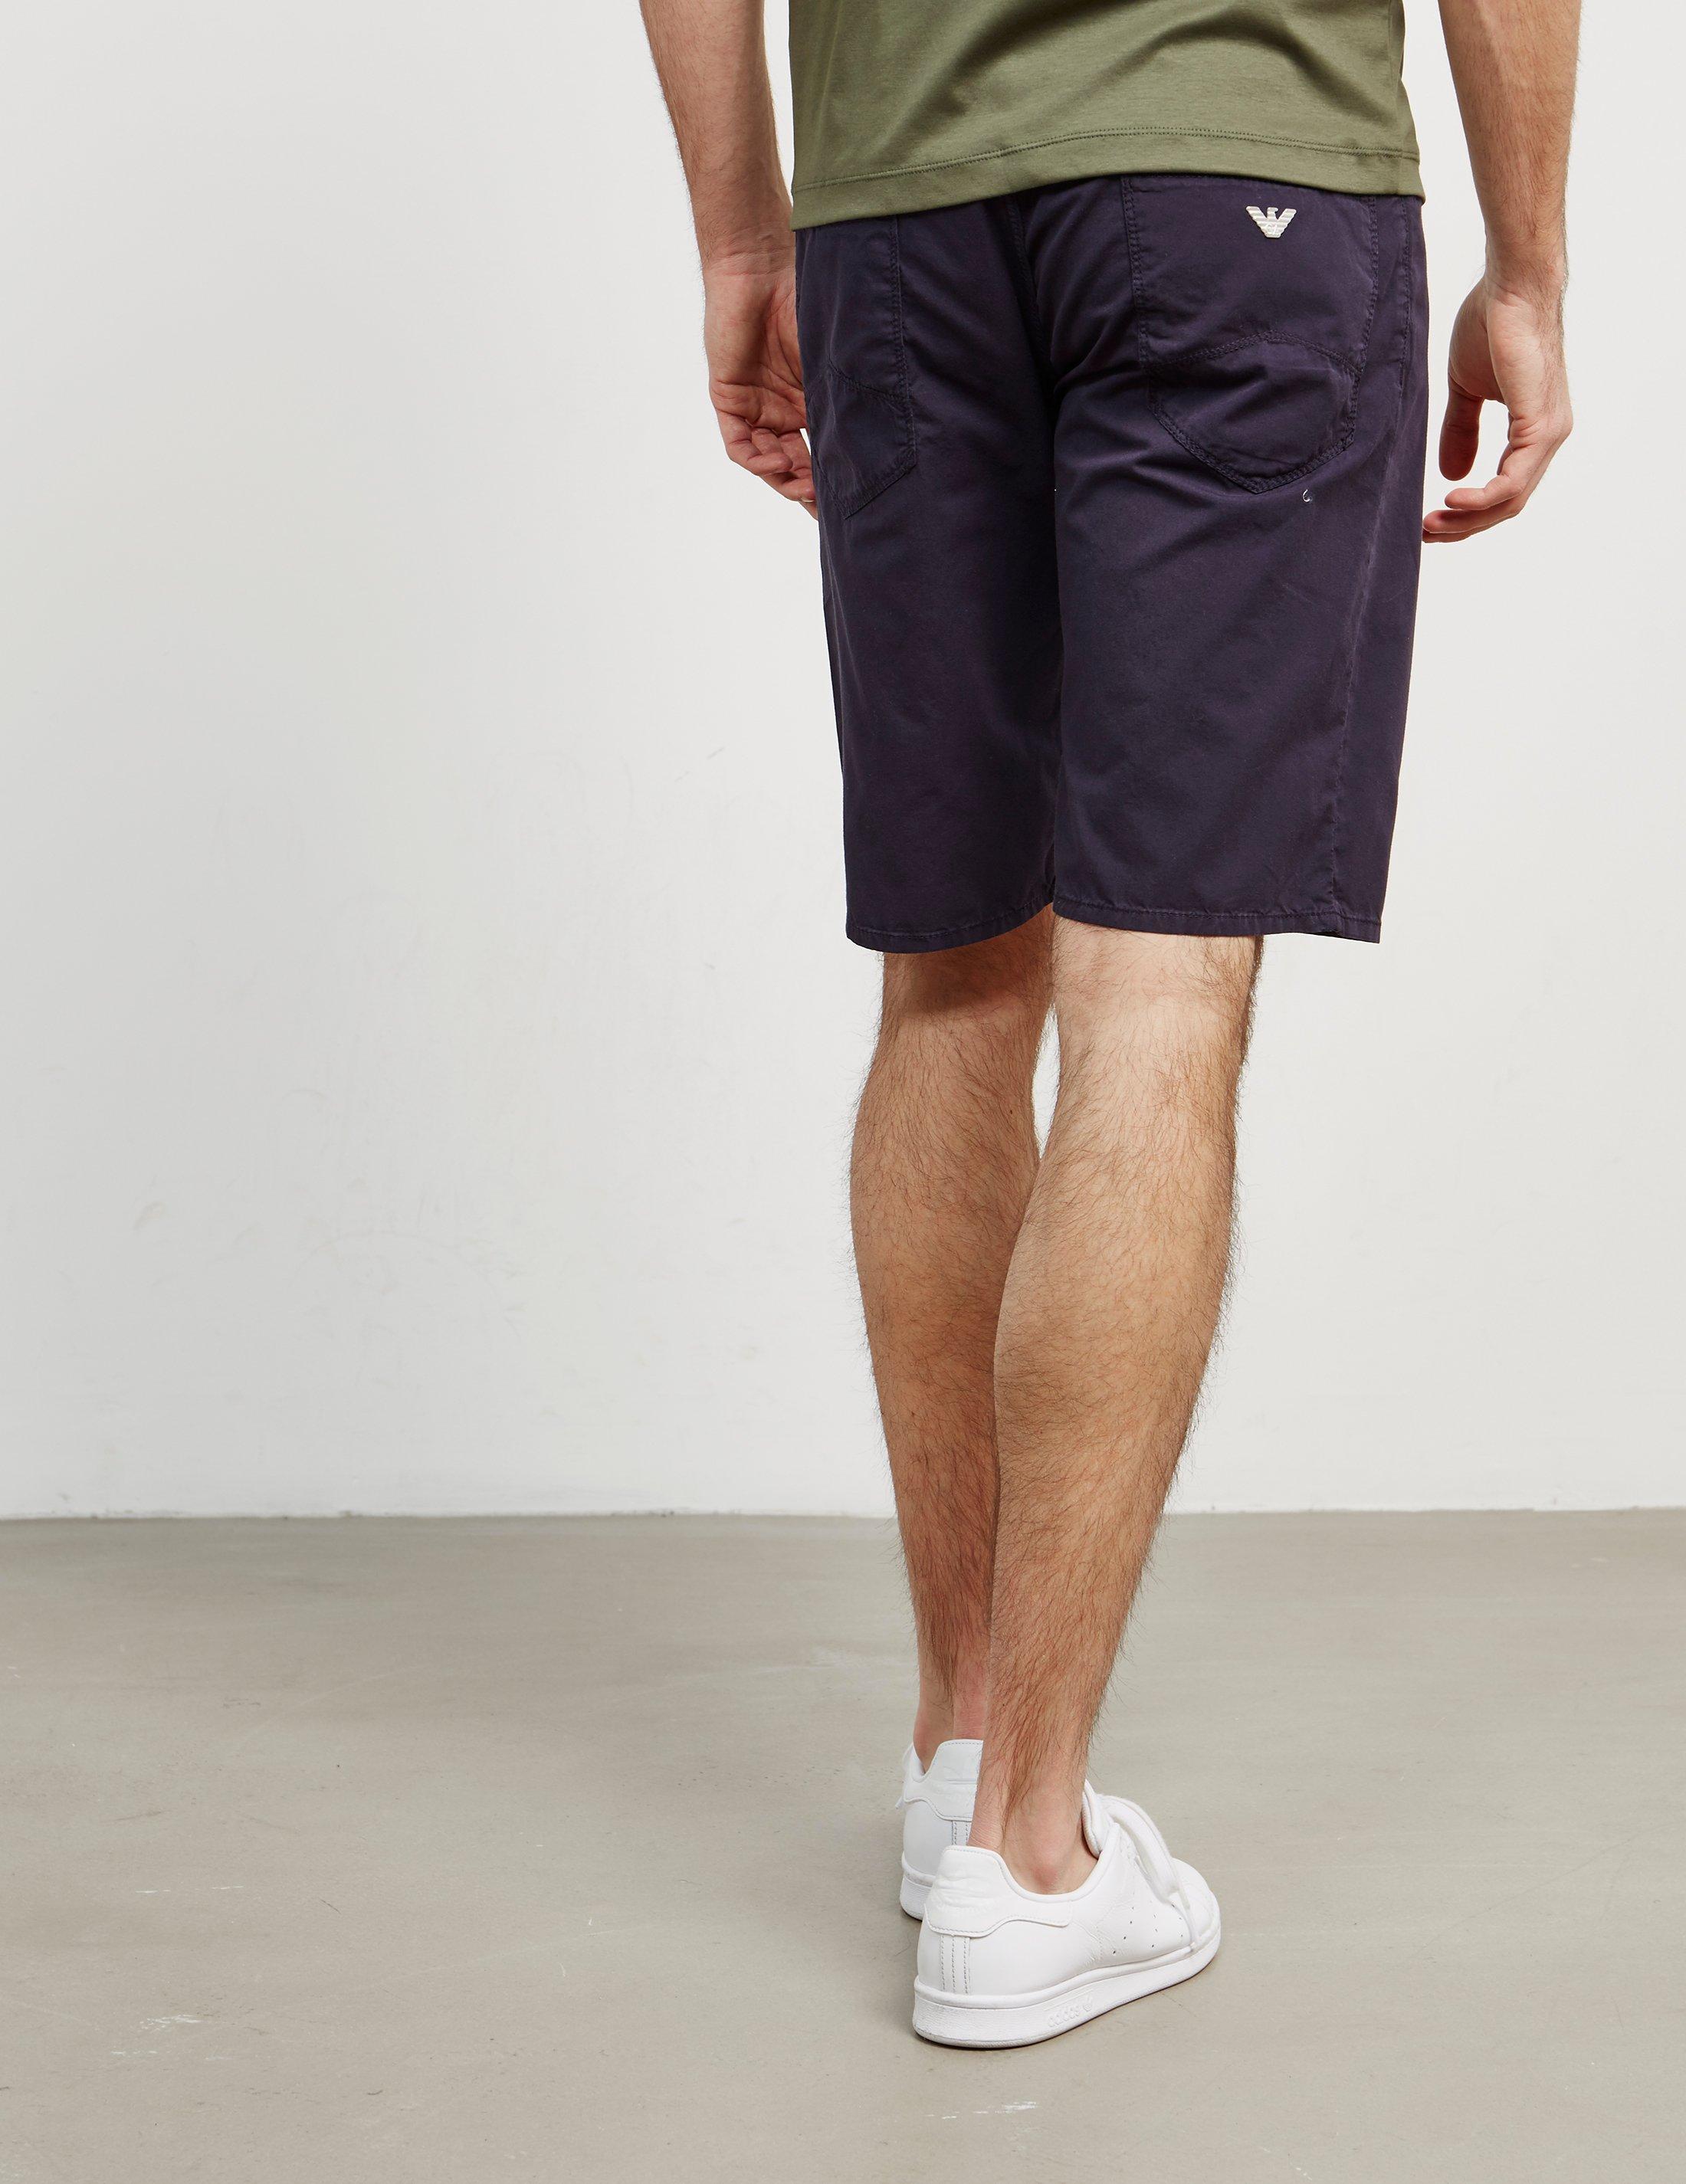 emporio armani 5 pocket shorts